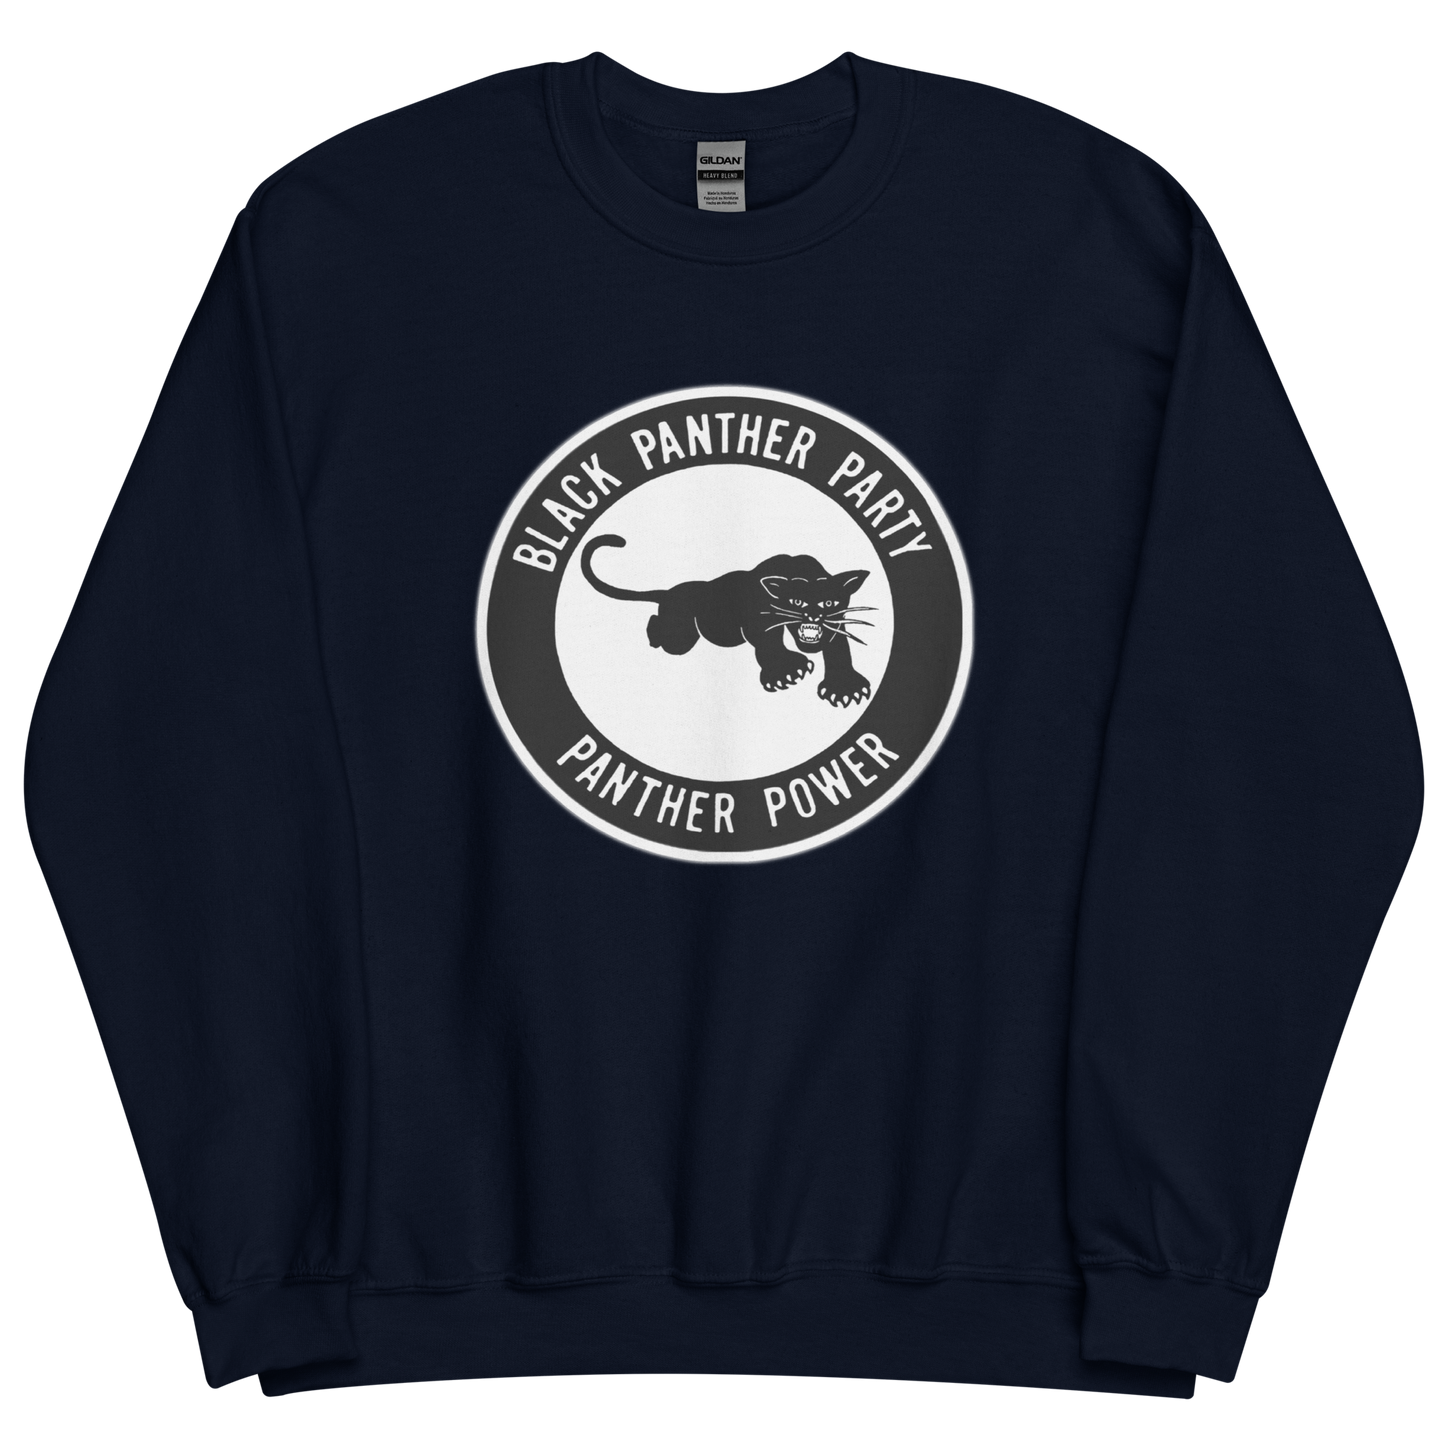 Black Panther Party Original Logo Sweatshirt